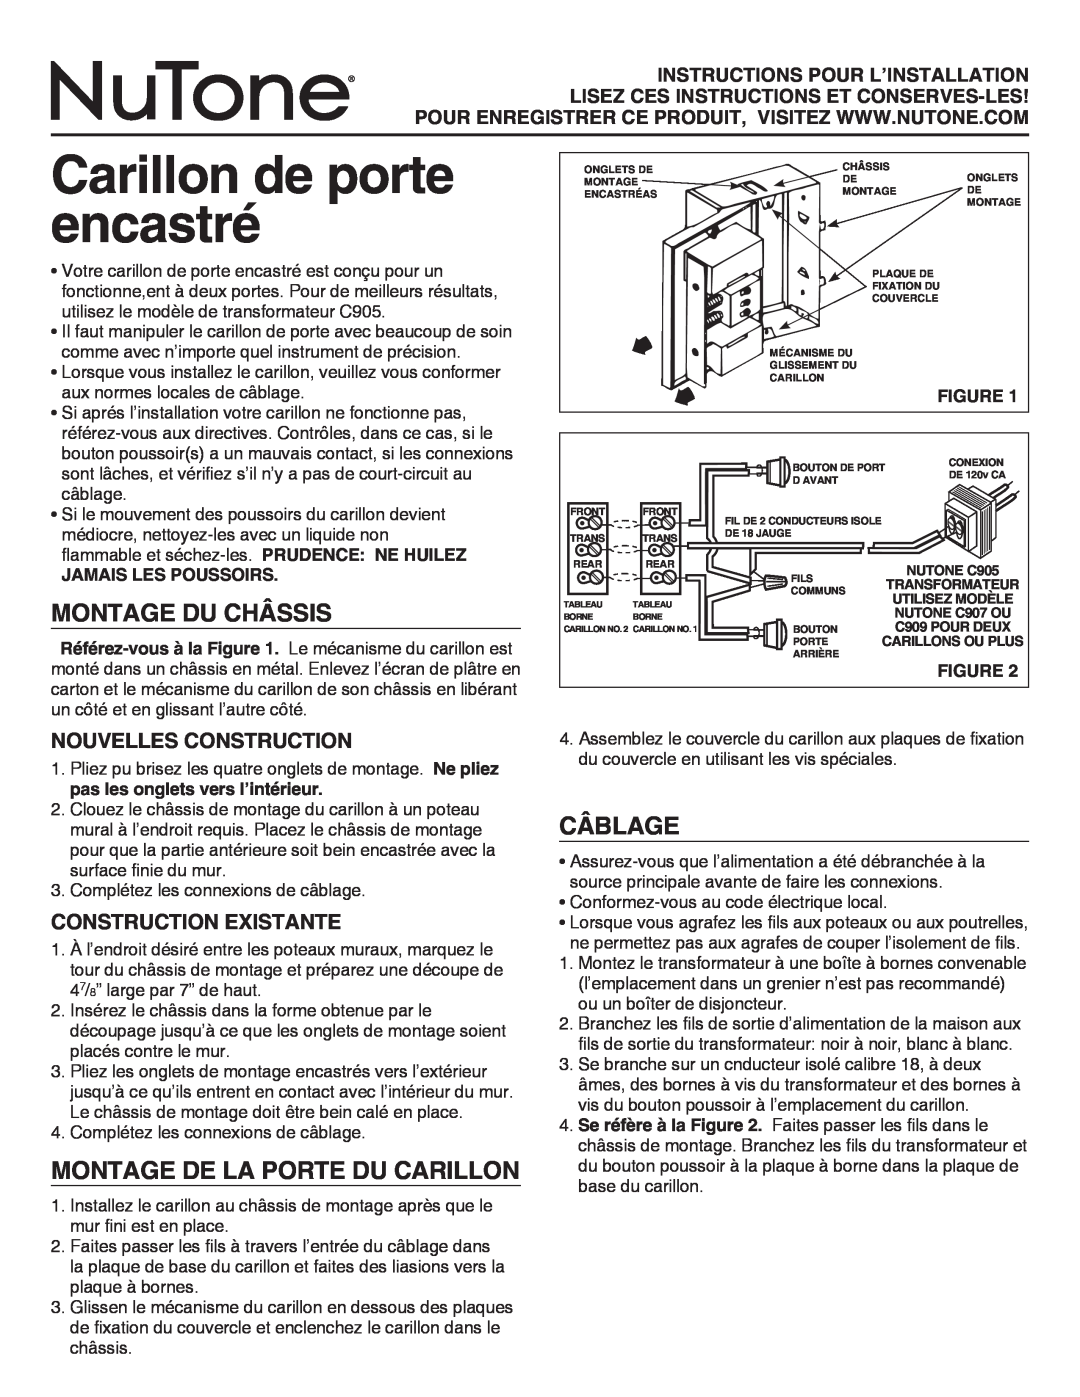 NuTone LA14WH Montage Du Châssis, Montage De La Porte Du Carillon, Câblage, NOUVELLES Construction, Construction EXISTANTE 